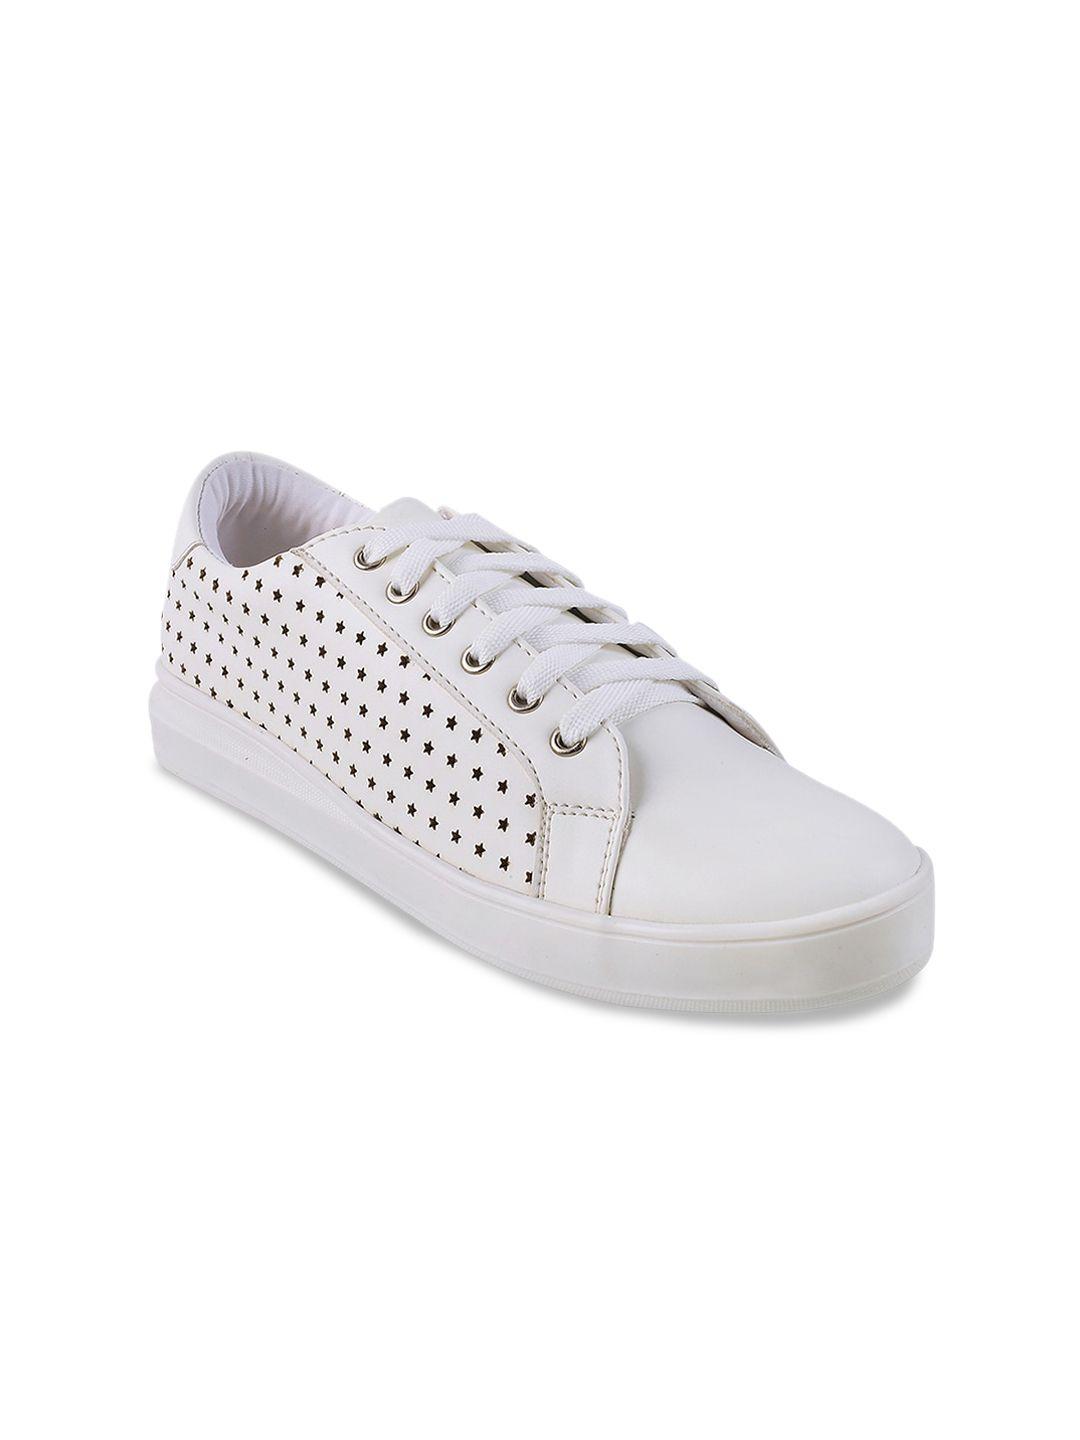 mochi women white printed sneakers